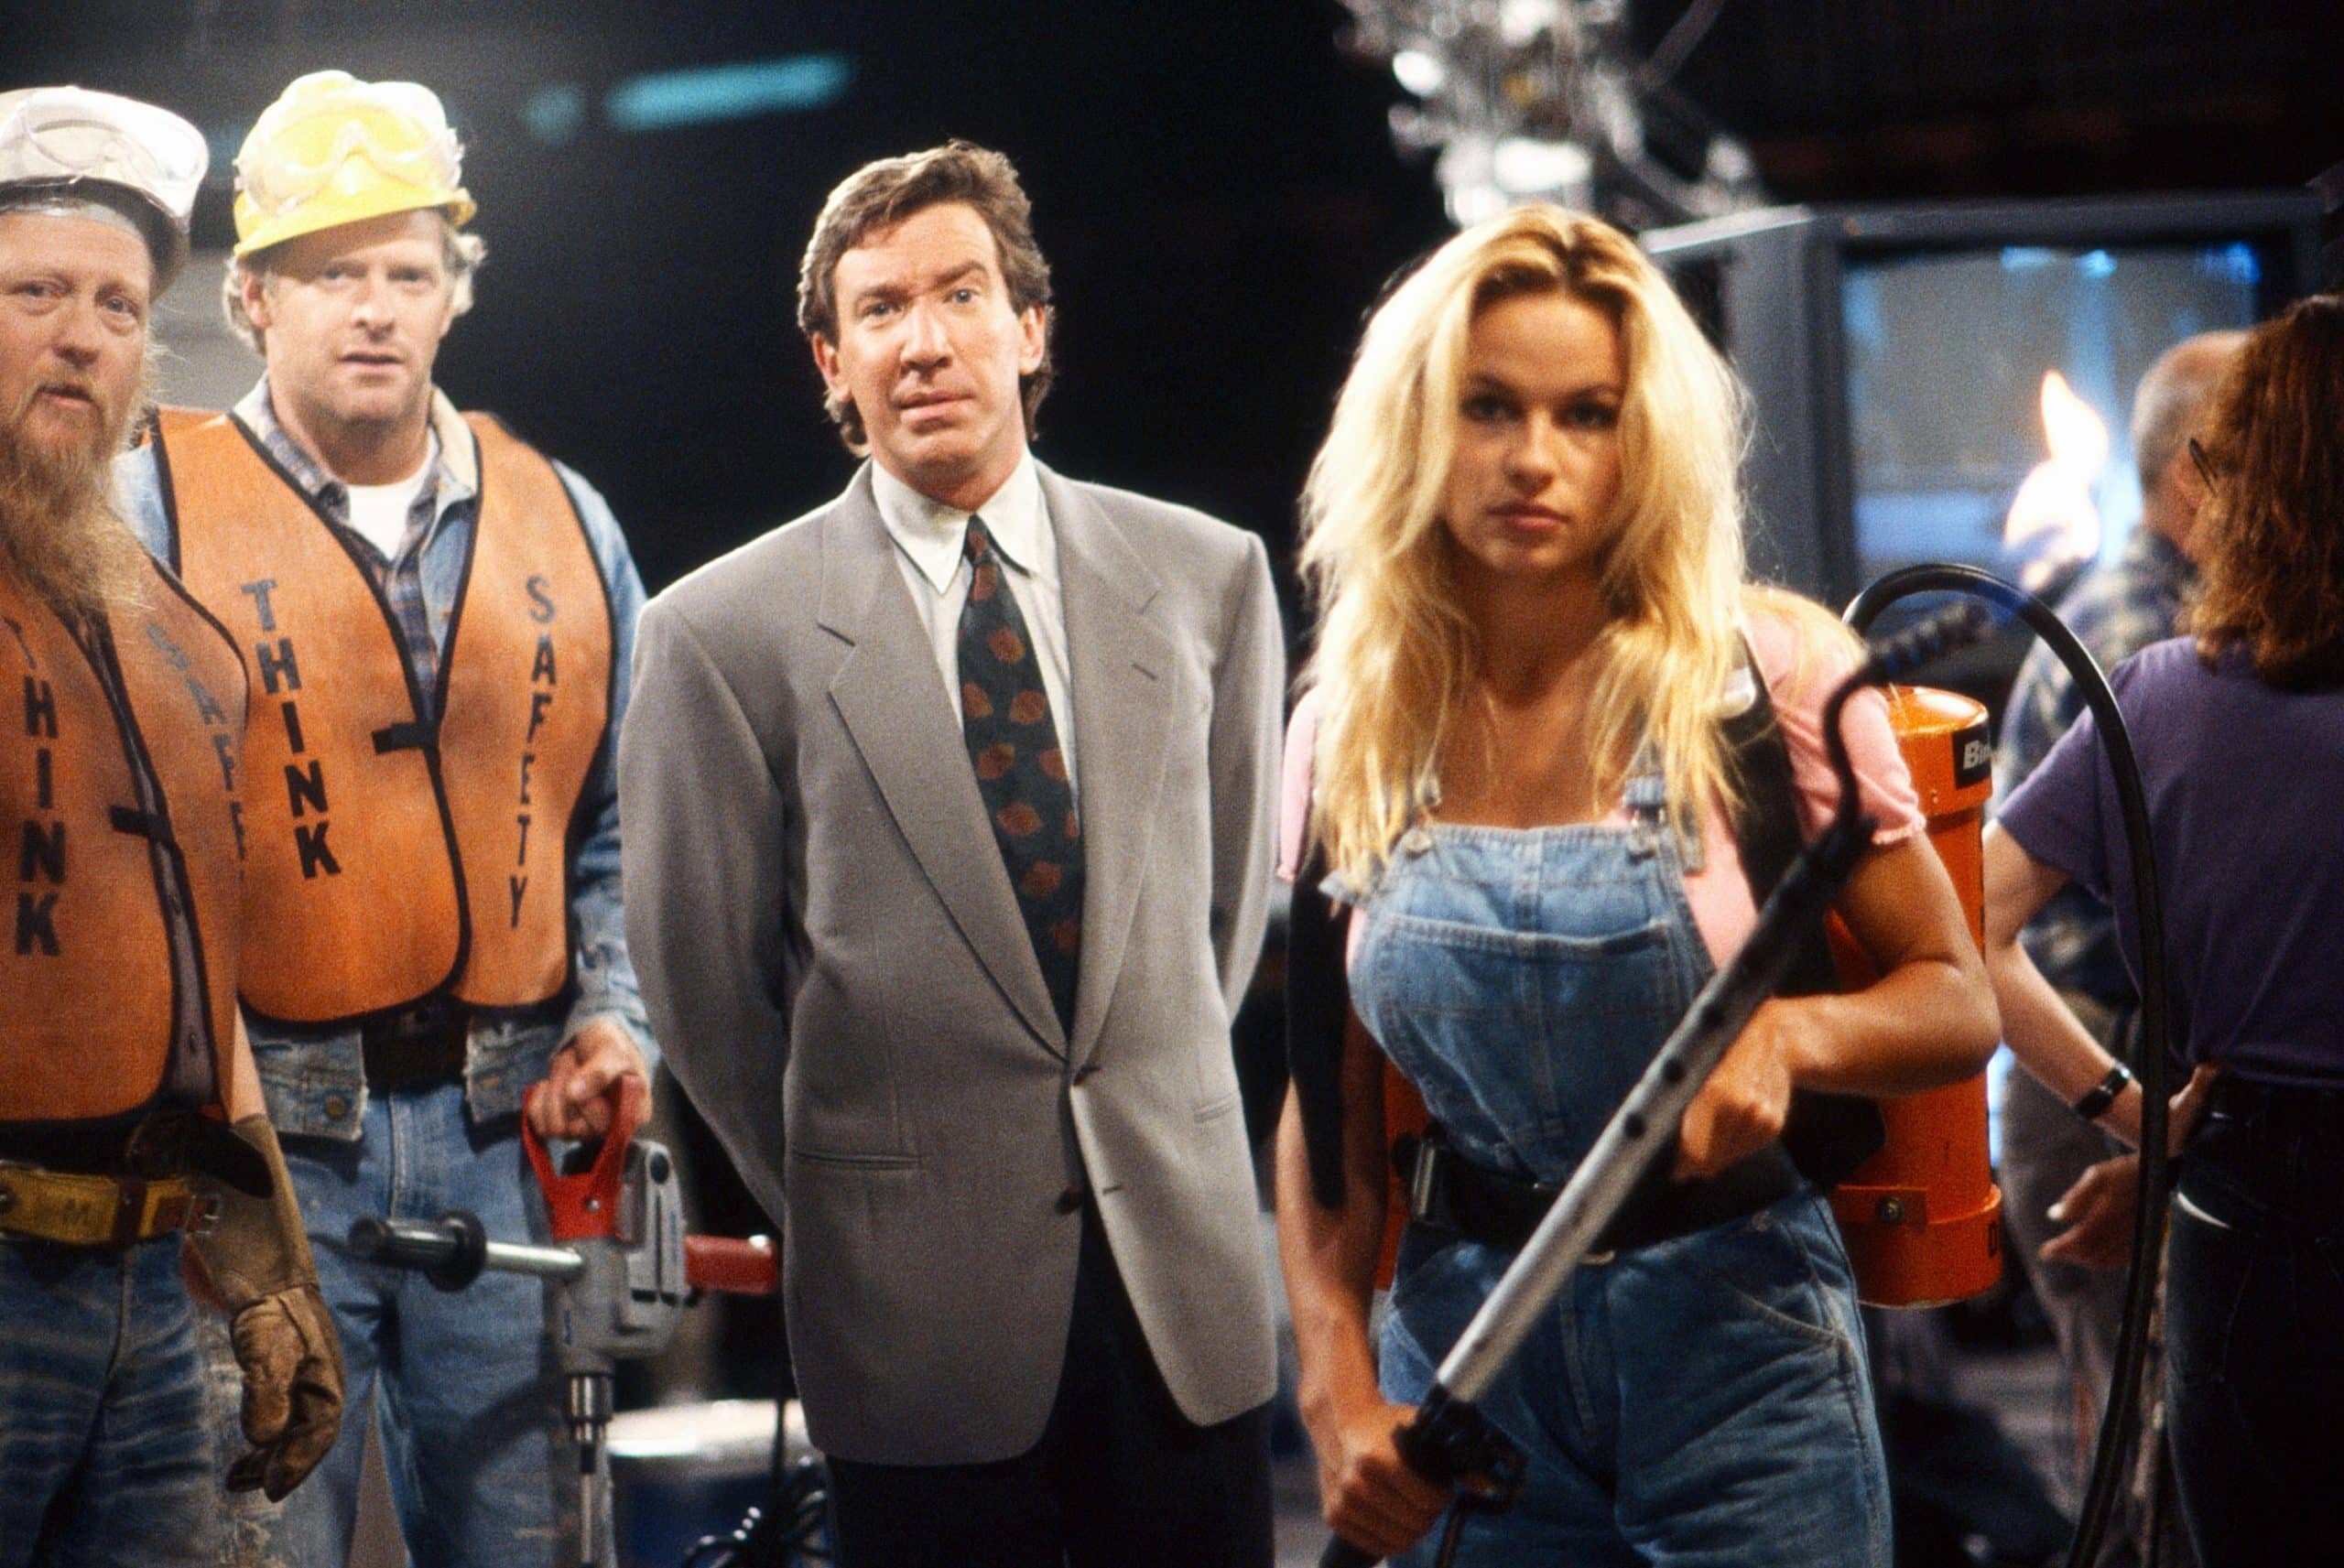 HOME IMPROVEMENT, Mickey Jones (left), Tim Allen (wearing suit), Pamela Anderson, 'Read My Hips', (Season 2 | Episode 1, aired 16 September 1992), 1991-99